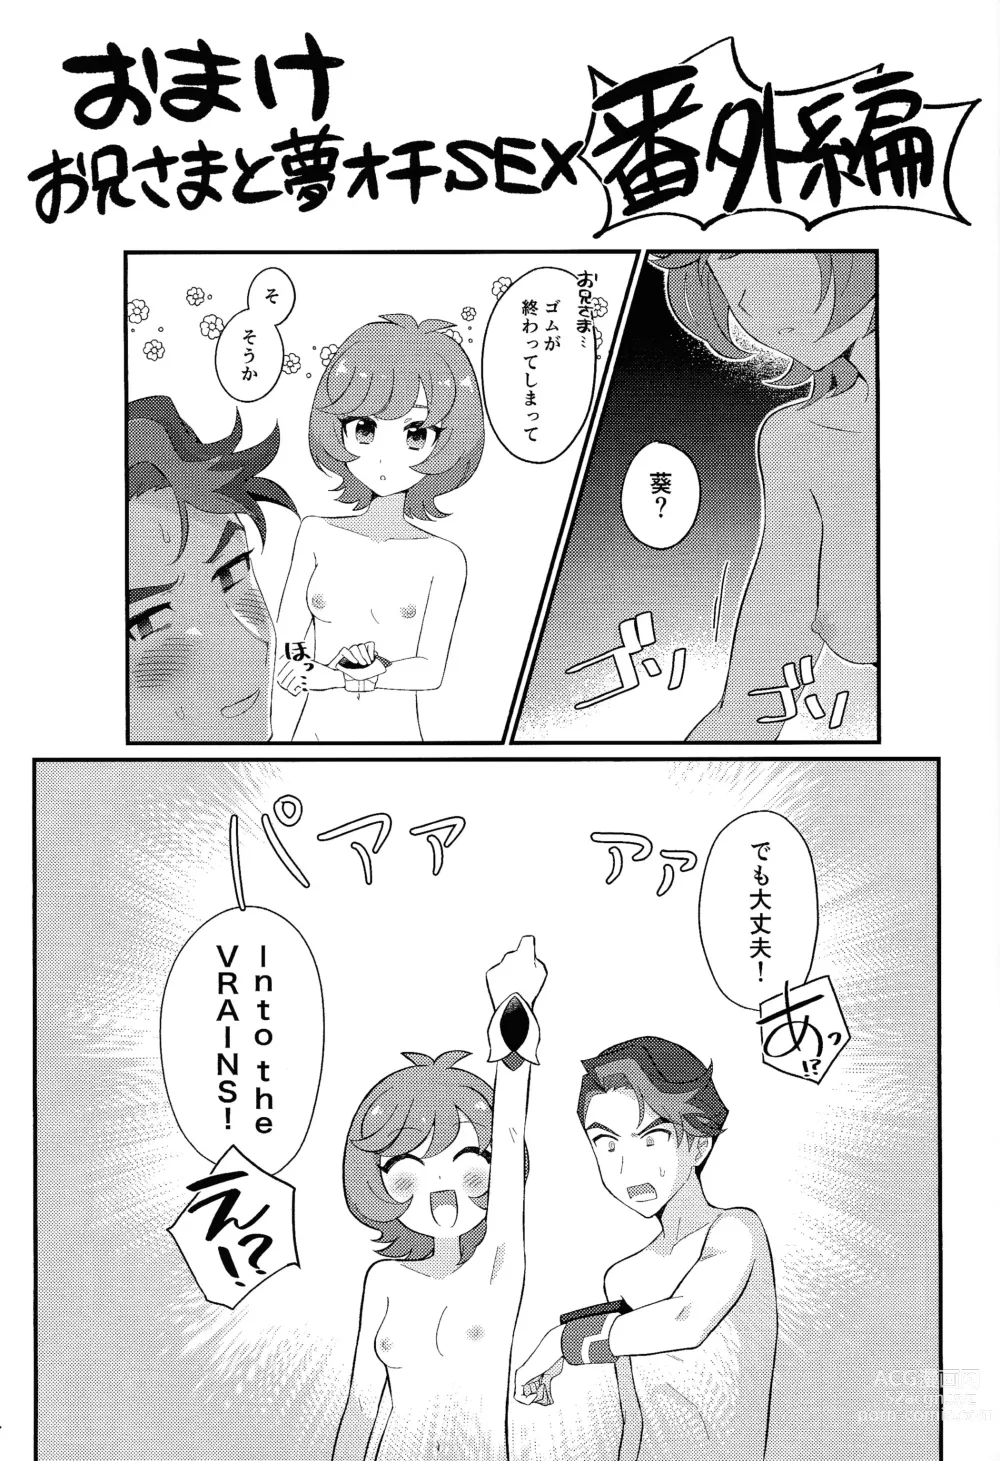 Page 22 of doujinshi Sotsugyo shite kara no o tanoshimi